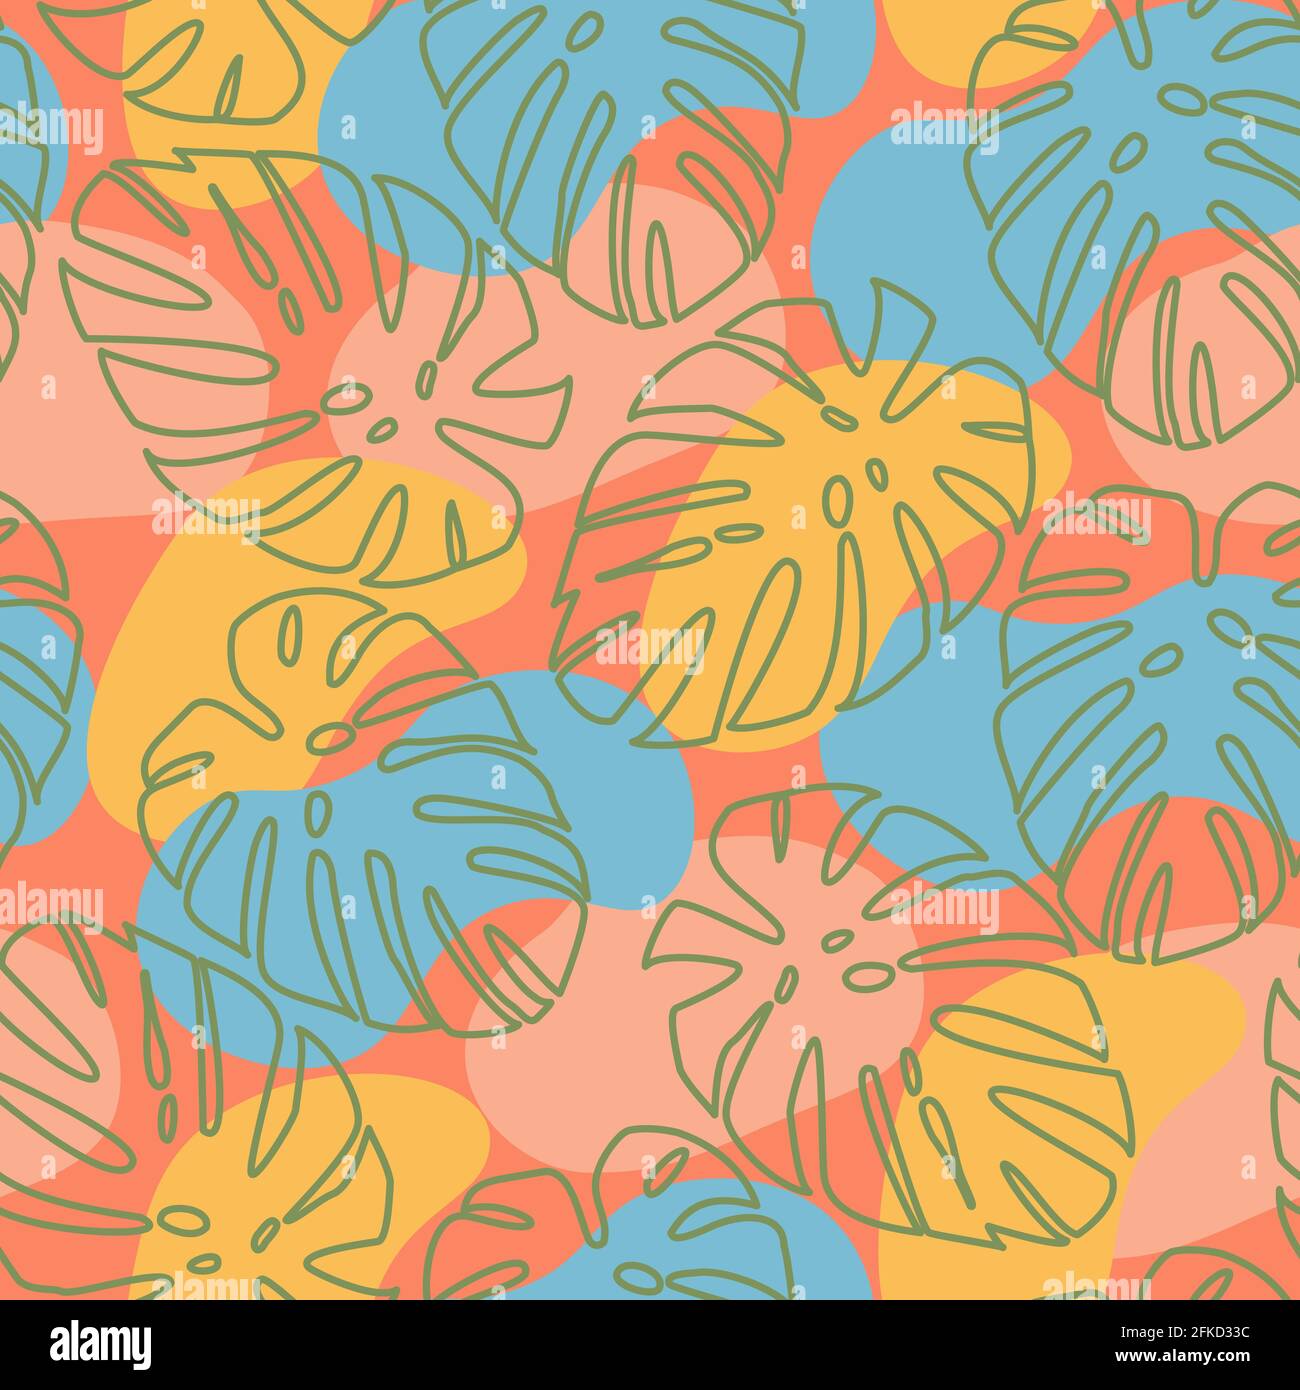 Contorni di foglie di palma e macchie colorate pastello dipinte su uno sfondo arancione.motivo di tessuto. Stile moderno. Fashion print.Seamless pattern abstract Illustrazione Vettoriale